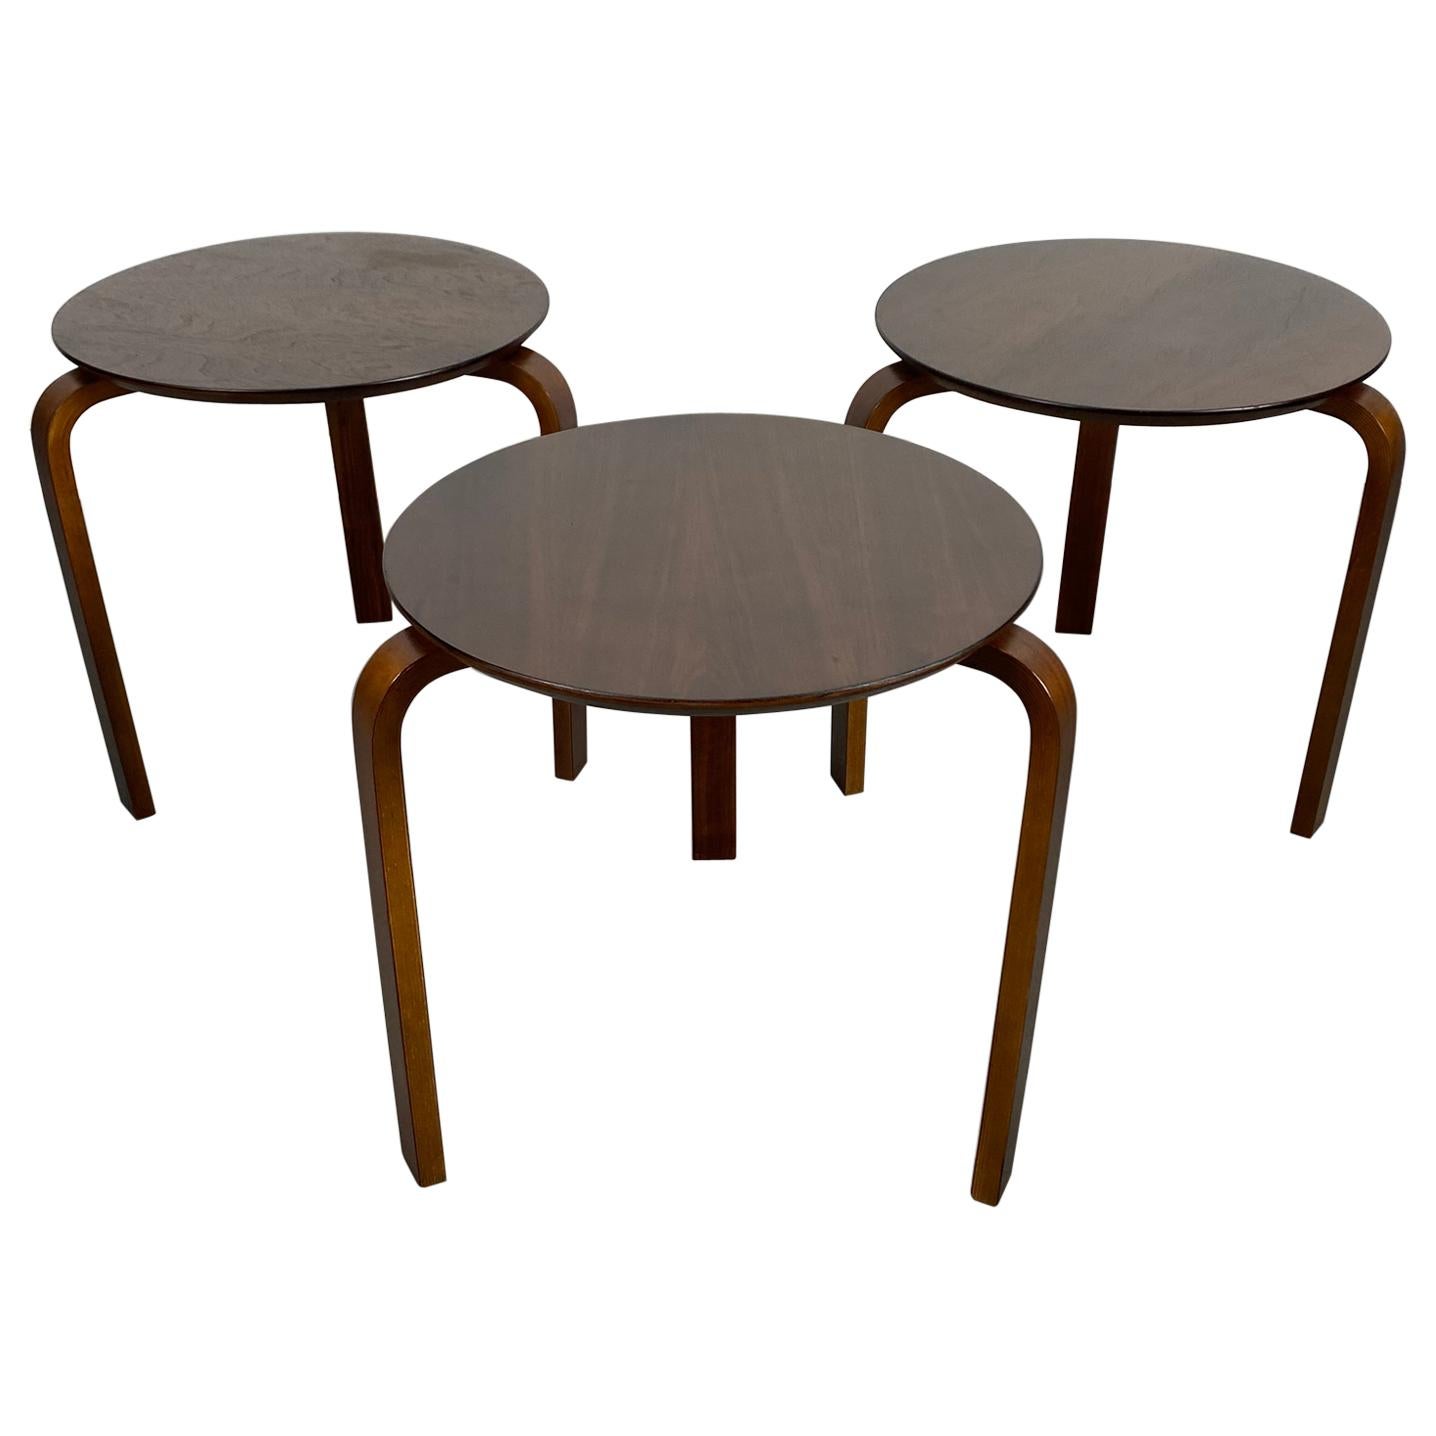 Ensemble de 3 tables classiques en bois cintré, modernistes, fabriquées au Danemark en vente